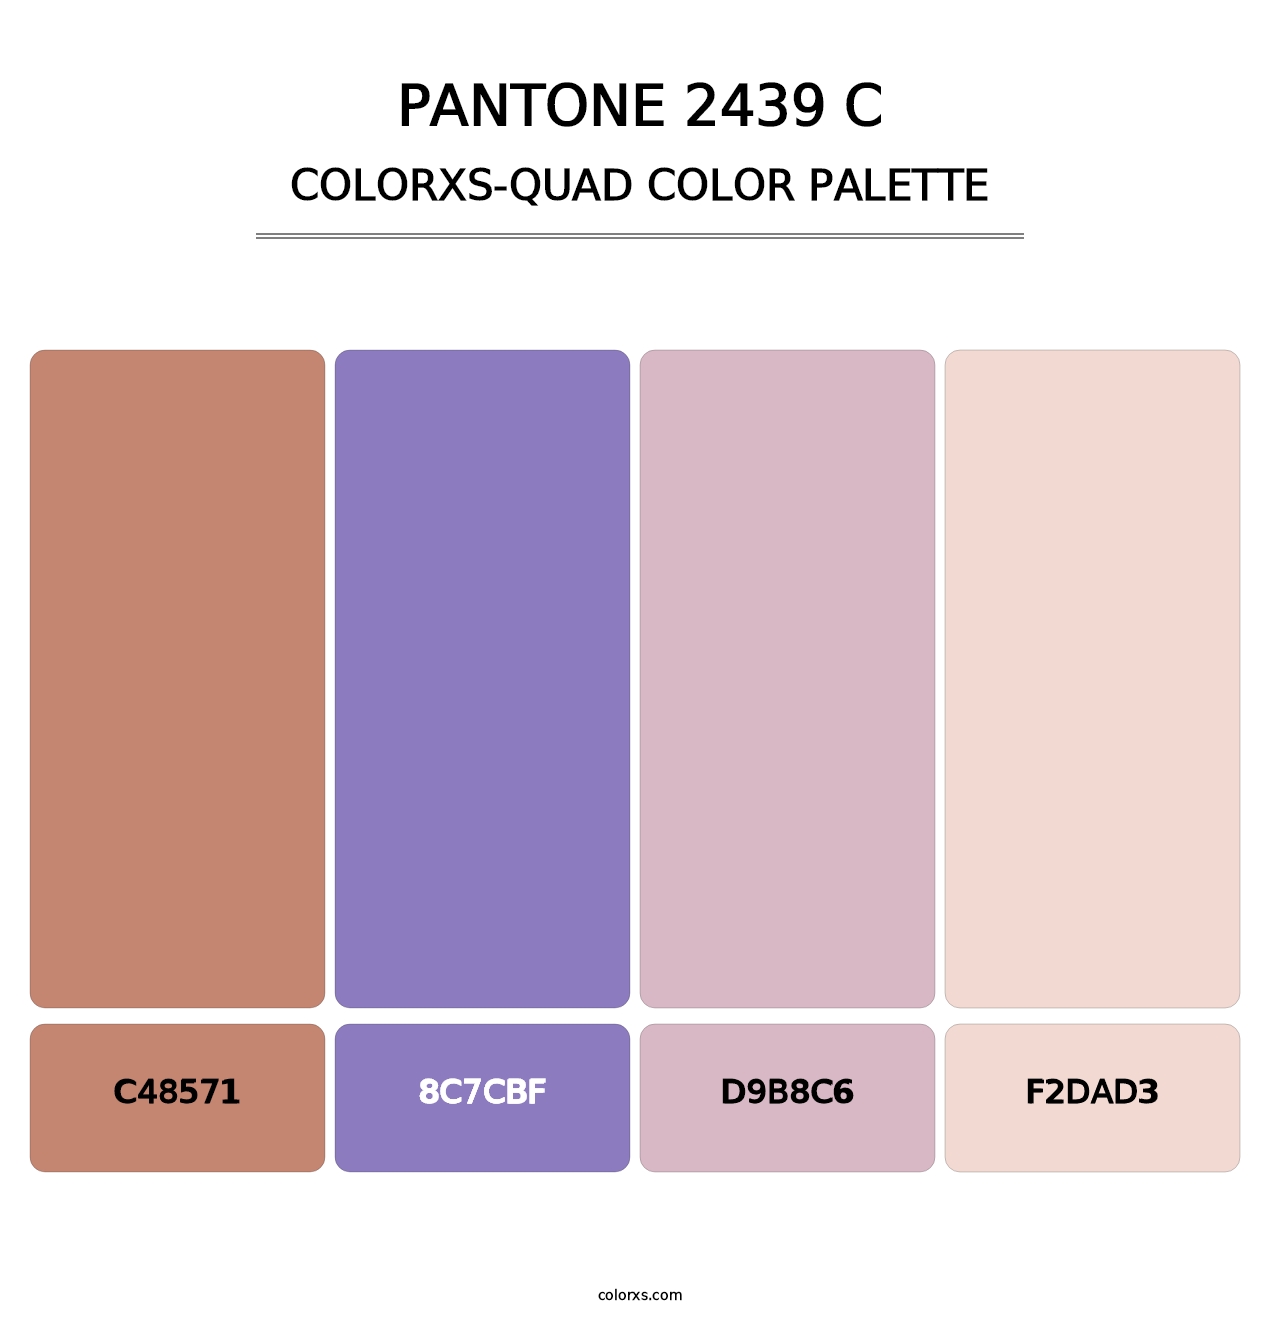 PANTONE 2439 C - Colorxs Quad Palette